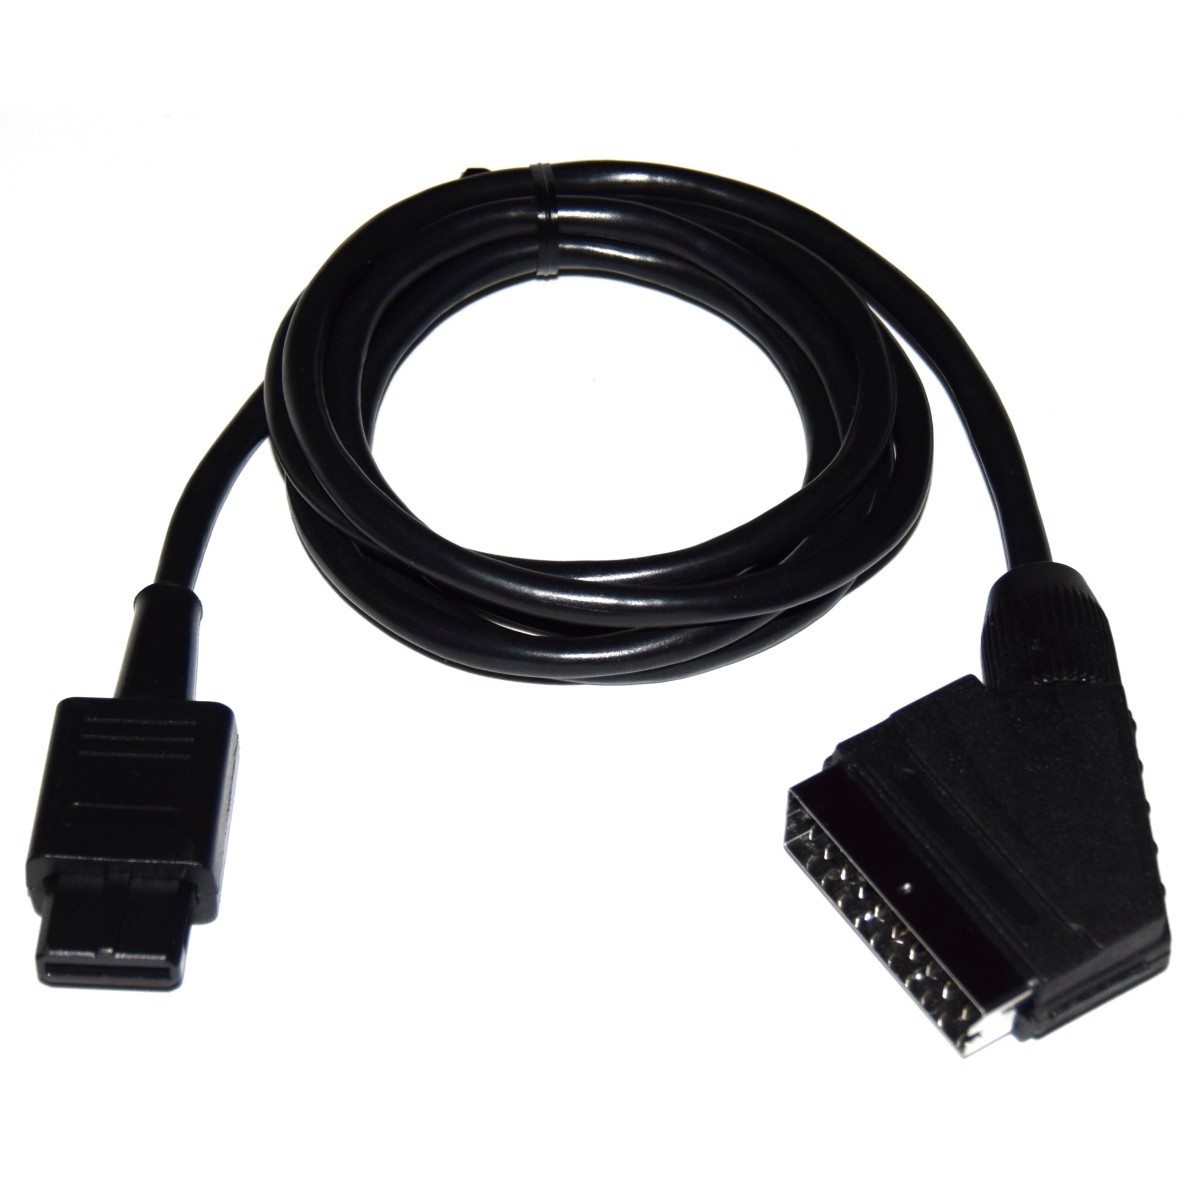 Câble péritel RGB Premium pour Nintendo 64 / N64